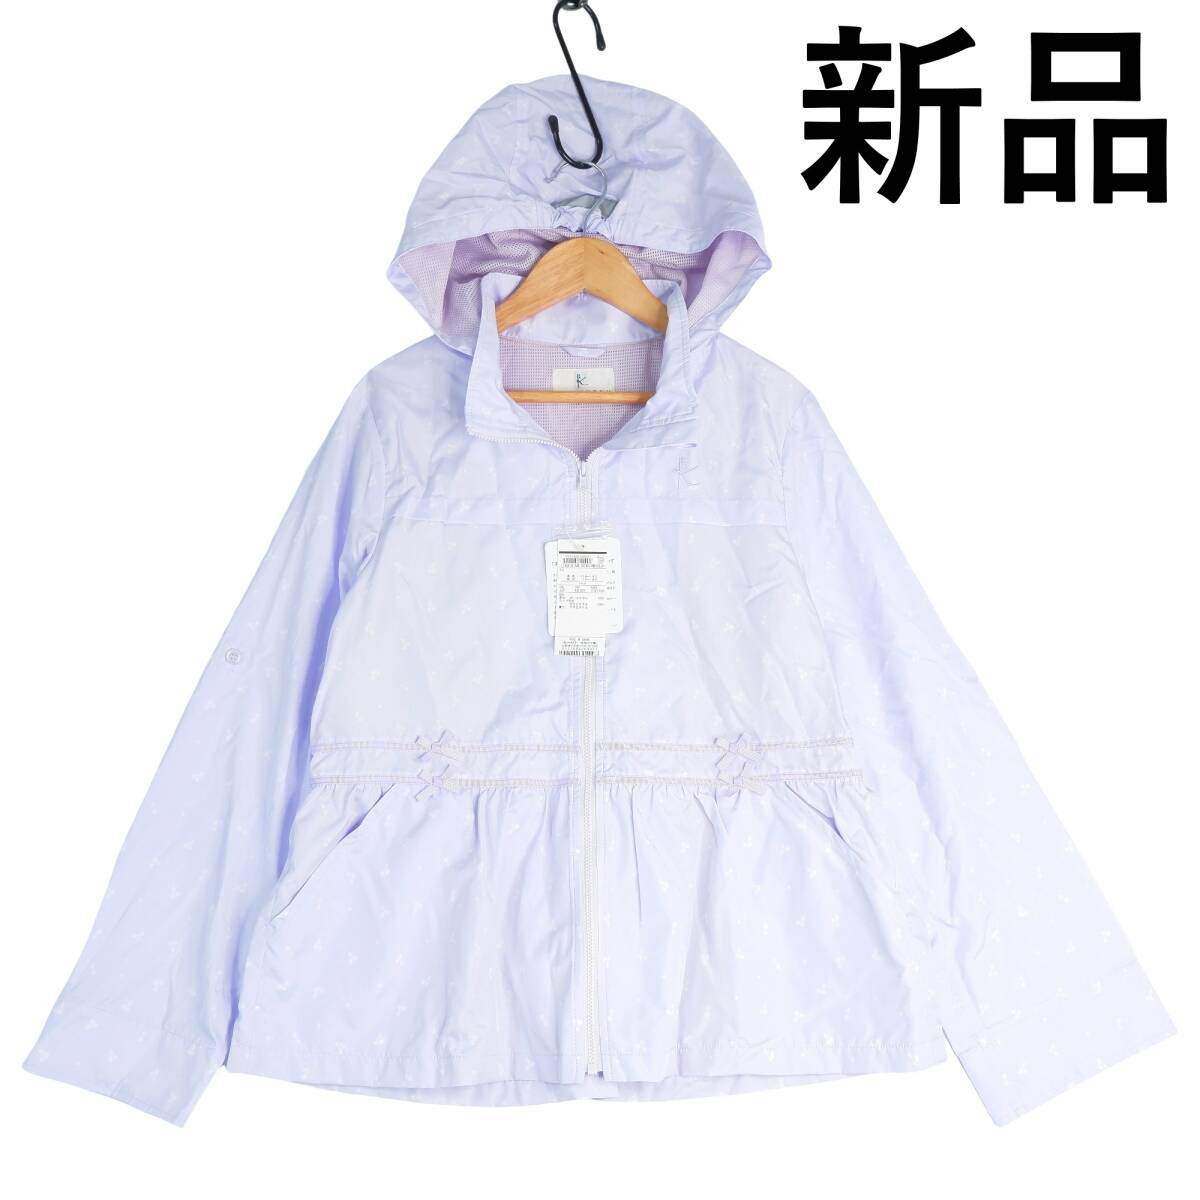 ◆ новый товар   бирка есть  ...◆ KUMIKYOKU ... мелодия  ... ... рукоятка   легкий (по весу) ♪  еда    пиджак   блузон    парка  ... фиолетовый    детский   женщина     ... 160　1334D0